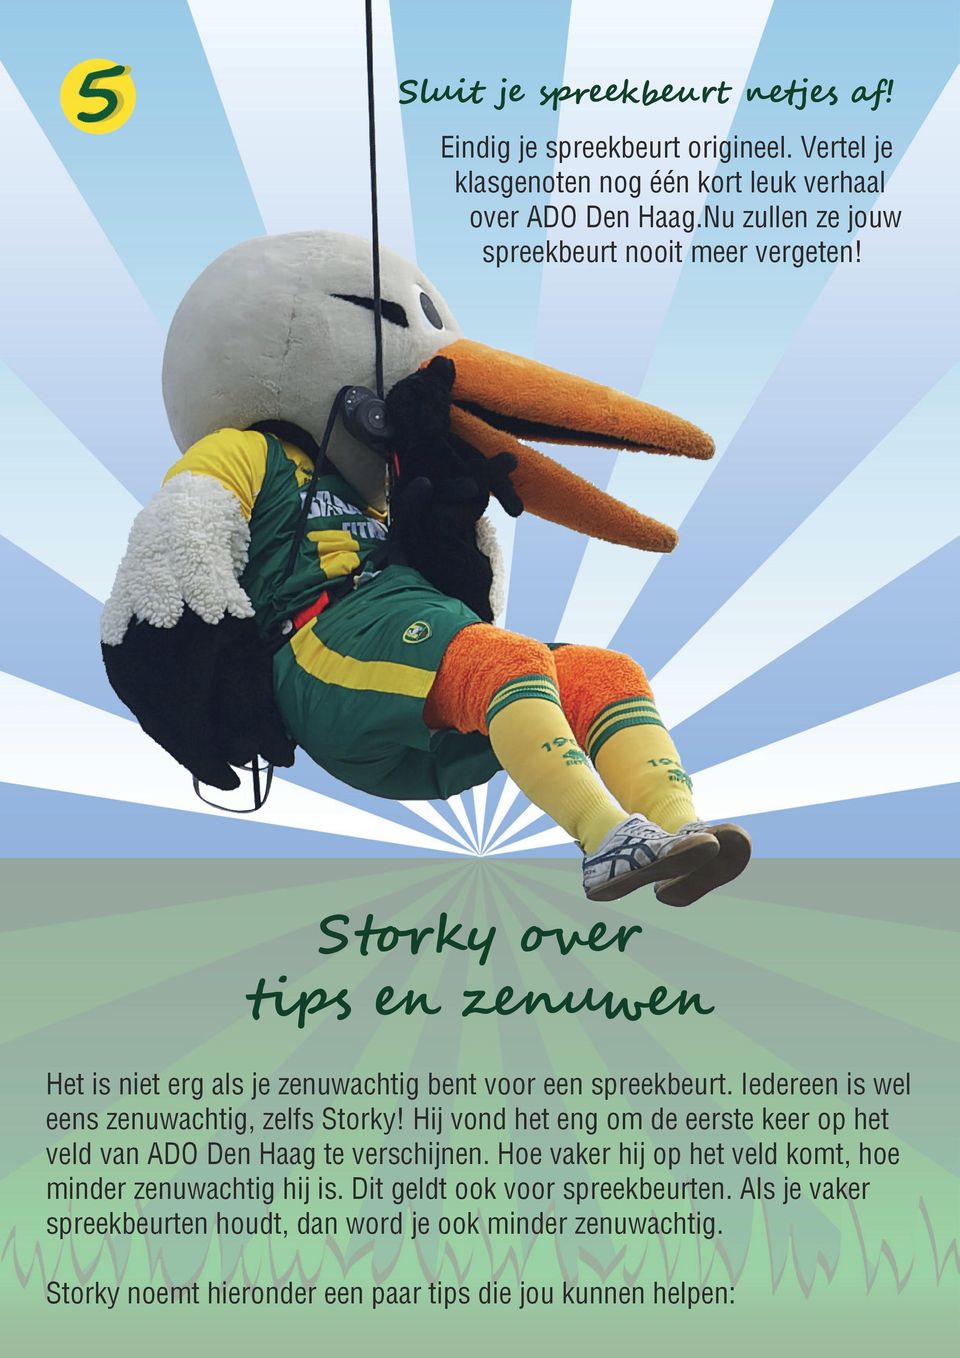 Iedereen is wel eens zenuwachtig, zelfs Storky! Hij vond het eng om de eerste keer op het veld van ADO Den Haag te verschijnen.